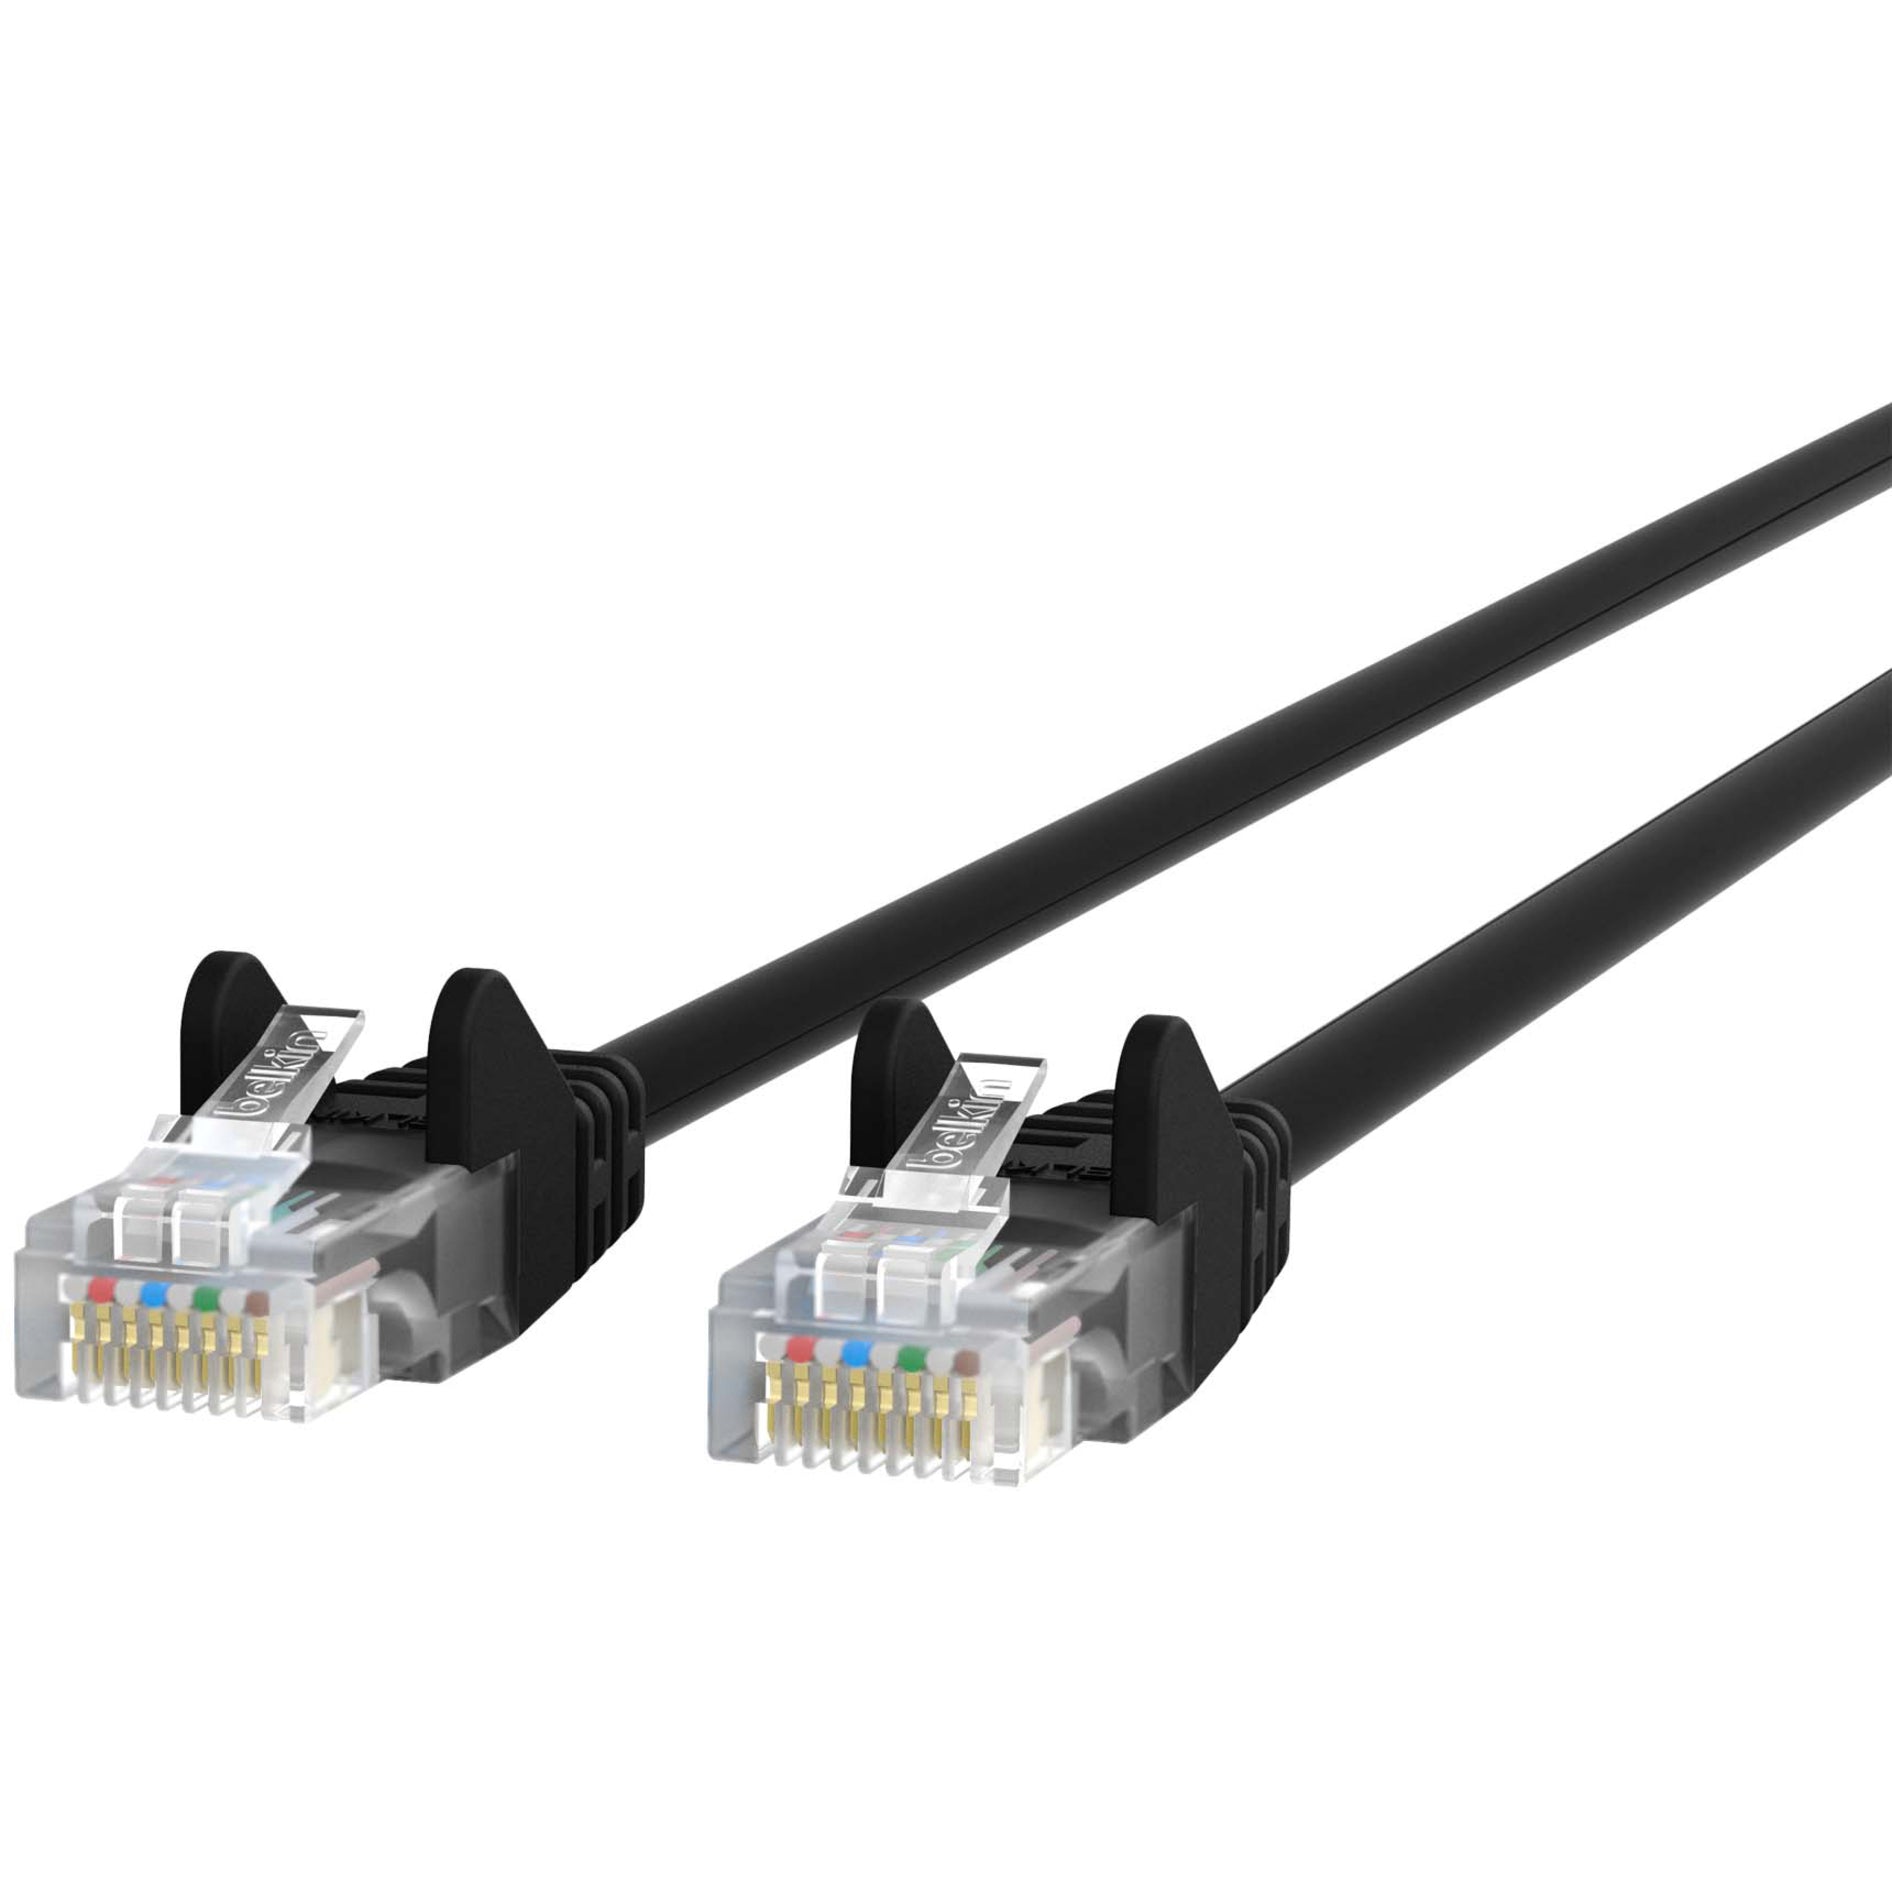 百朗 A3L791-04-BLK-S RJ45 类别 5e 防绞线补丁电缆，4 英尺，优质品质，黑色 百朗